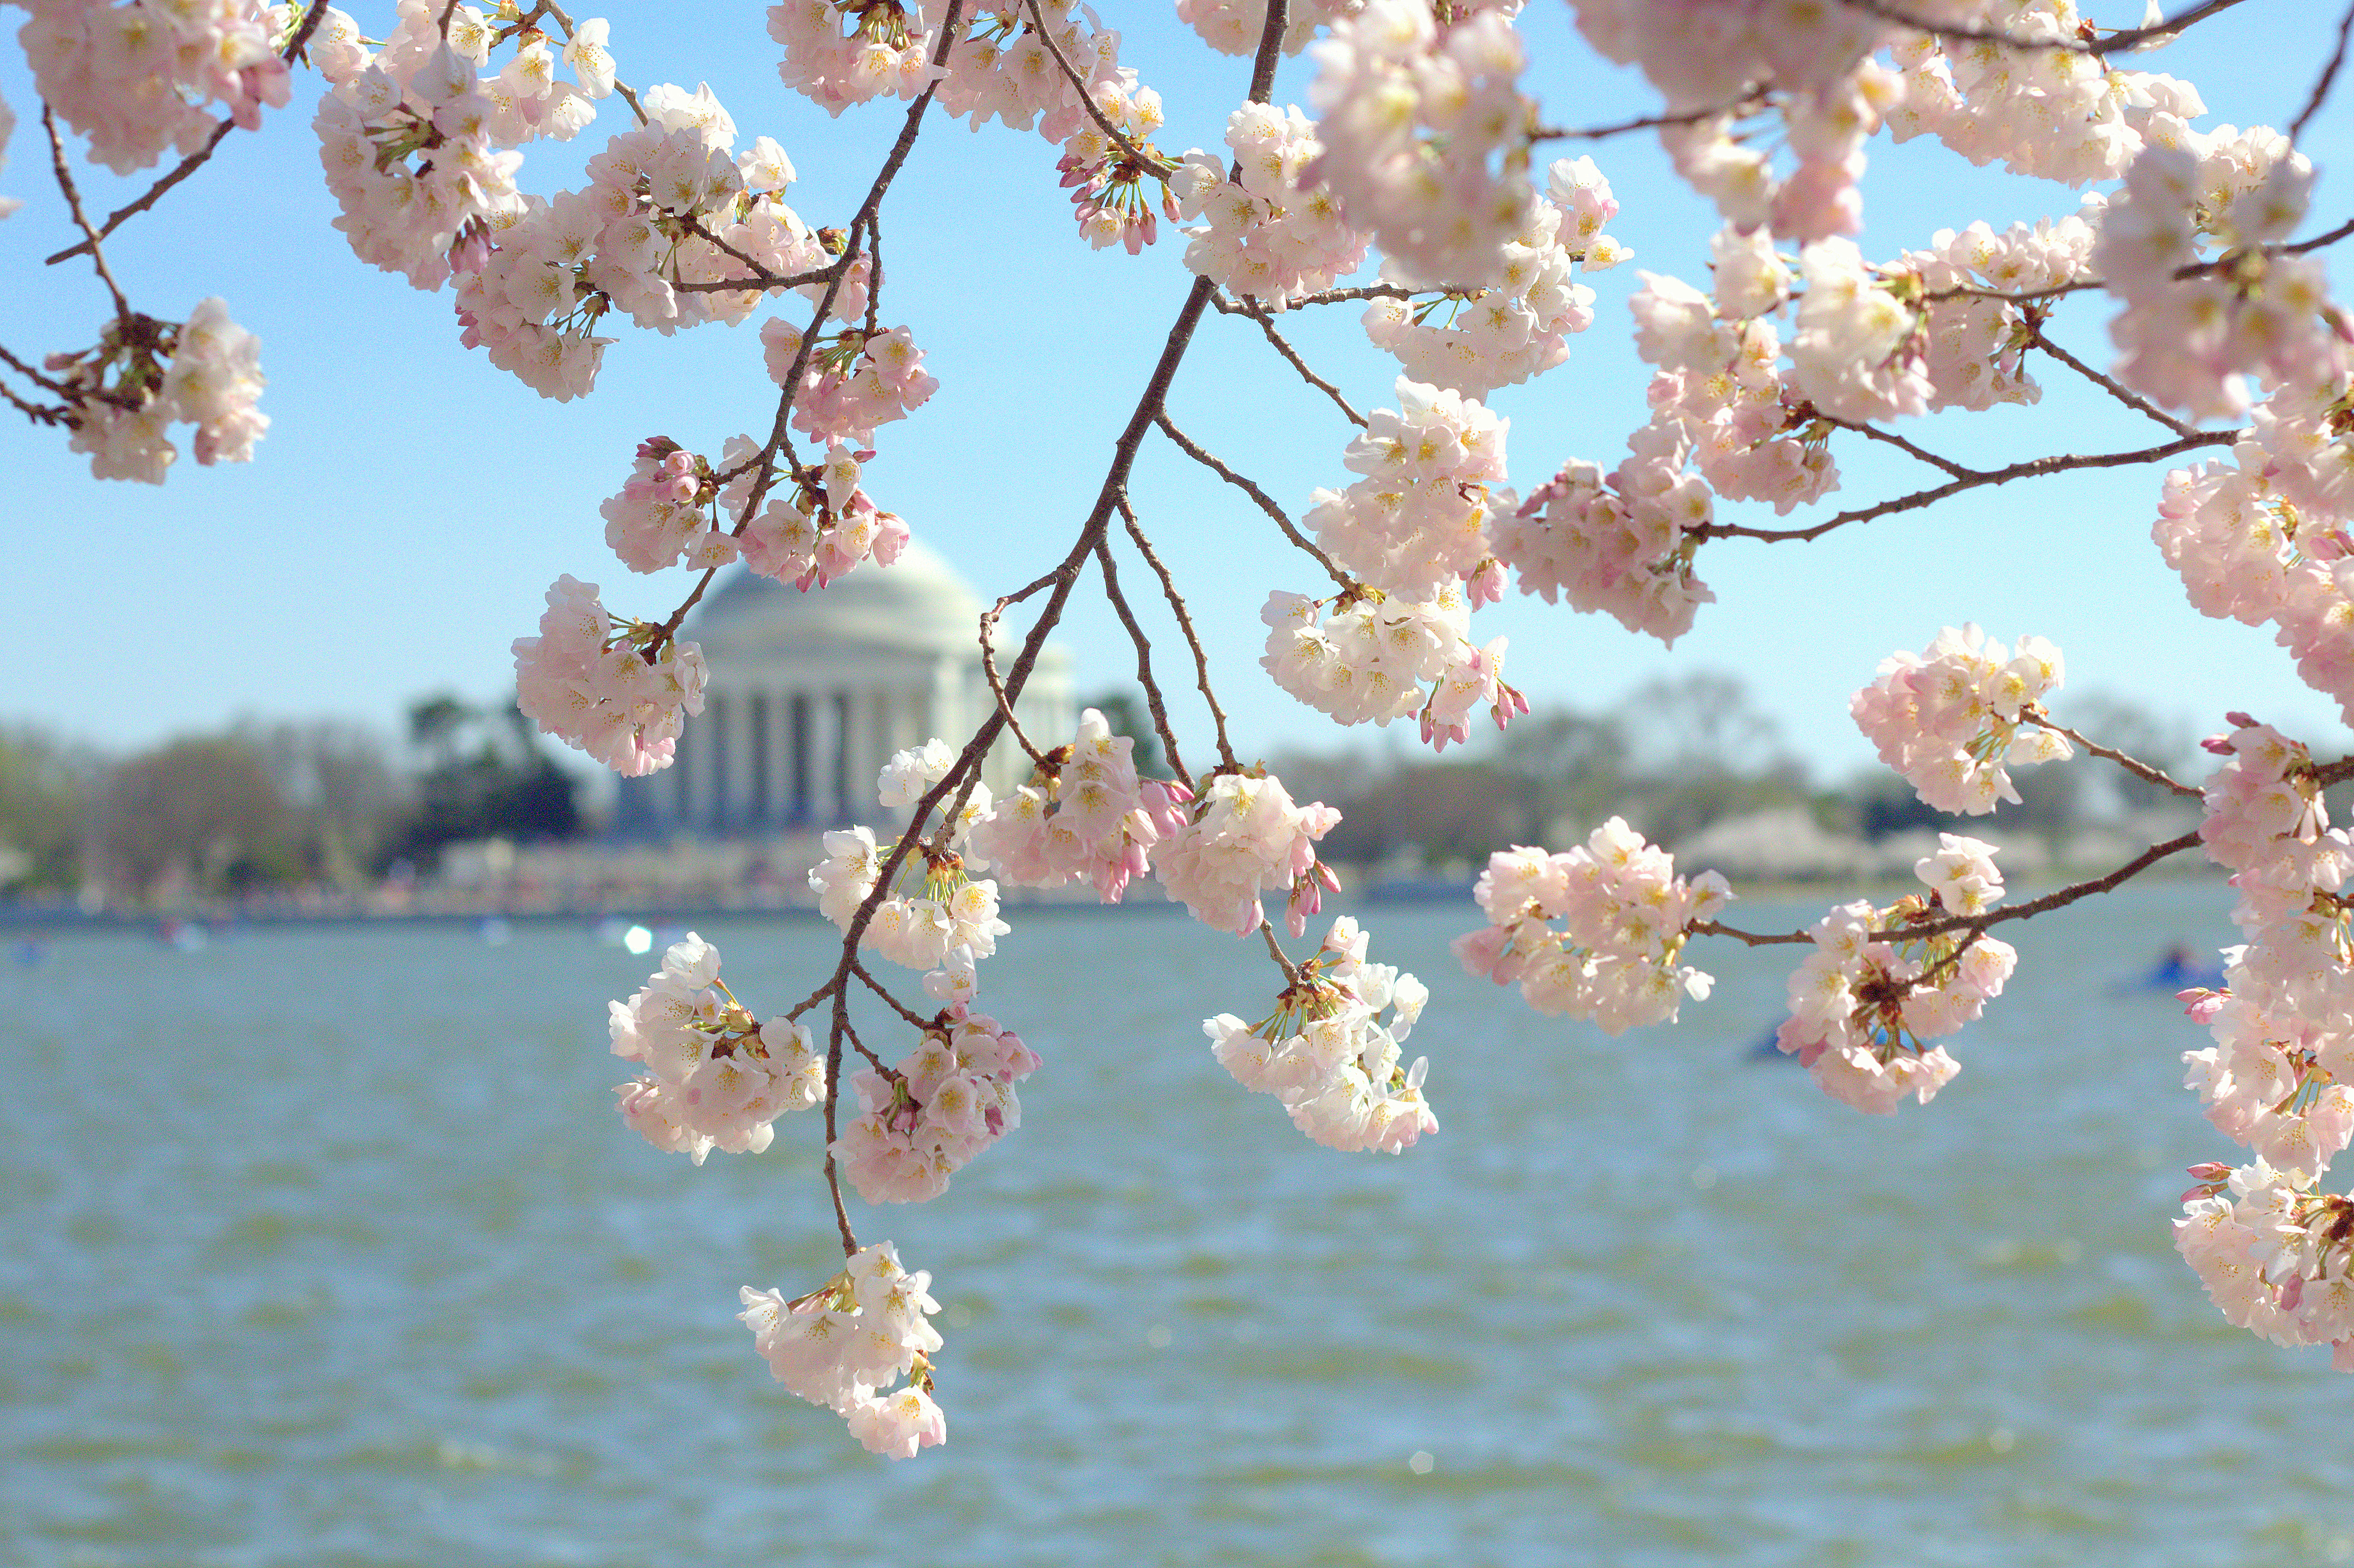 Favorites - Washington, D.C. Cherry Blossoms | Rachel E.H. Photography